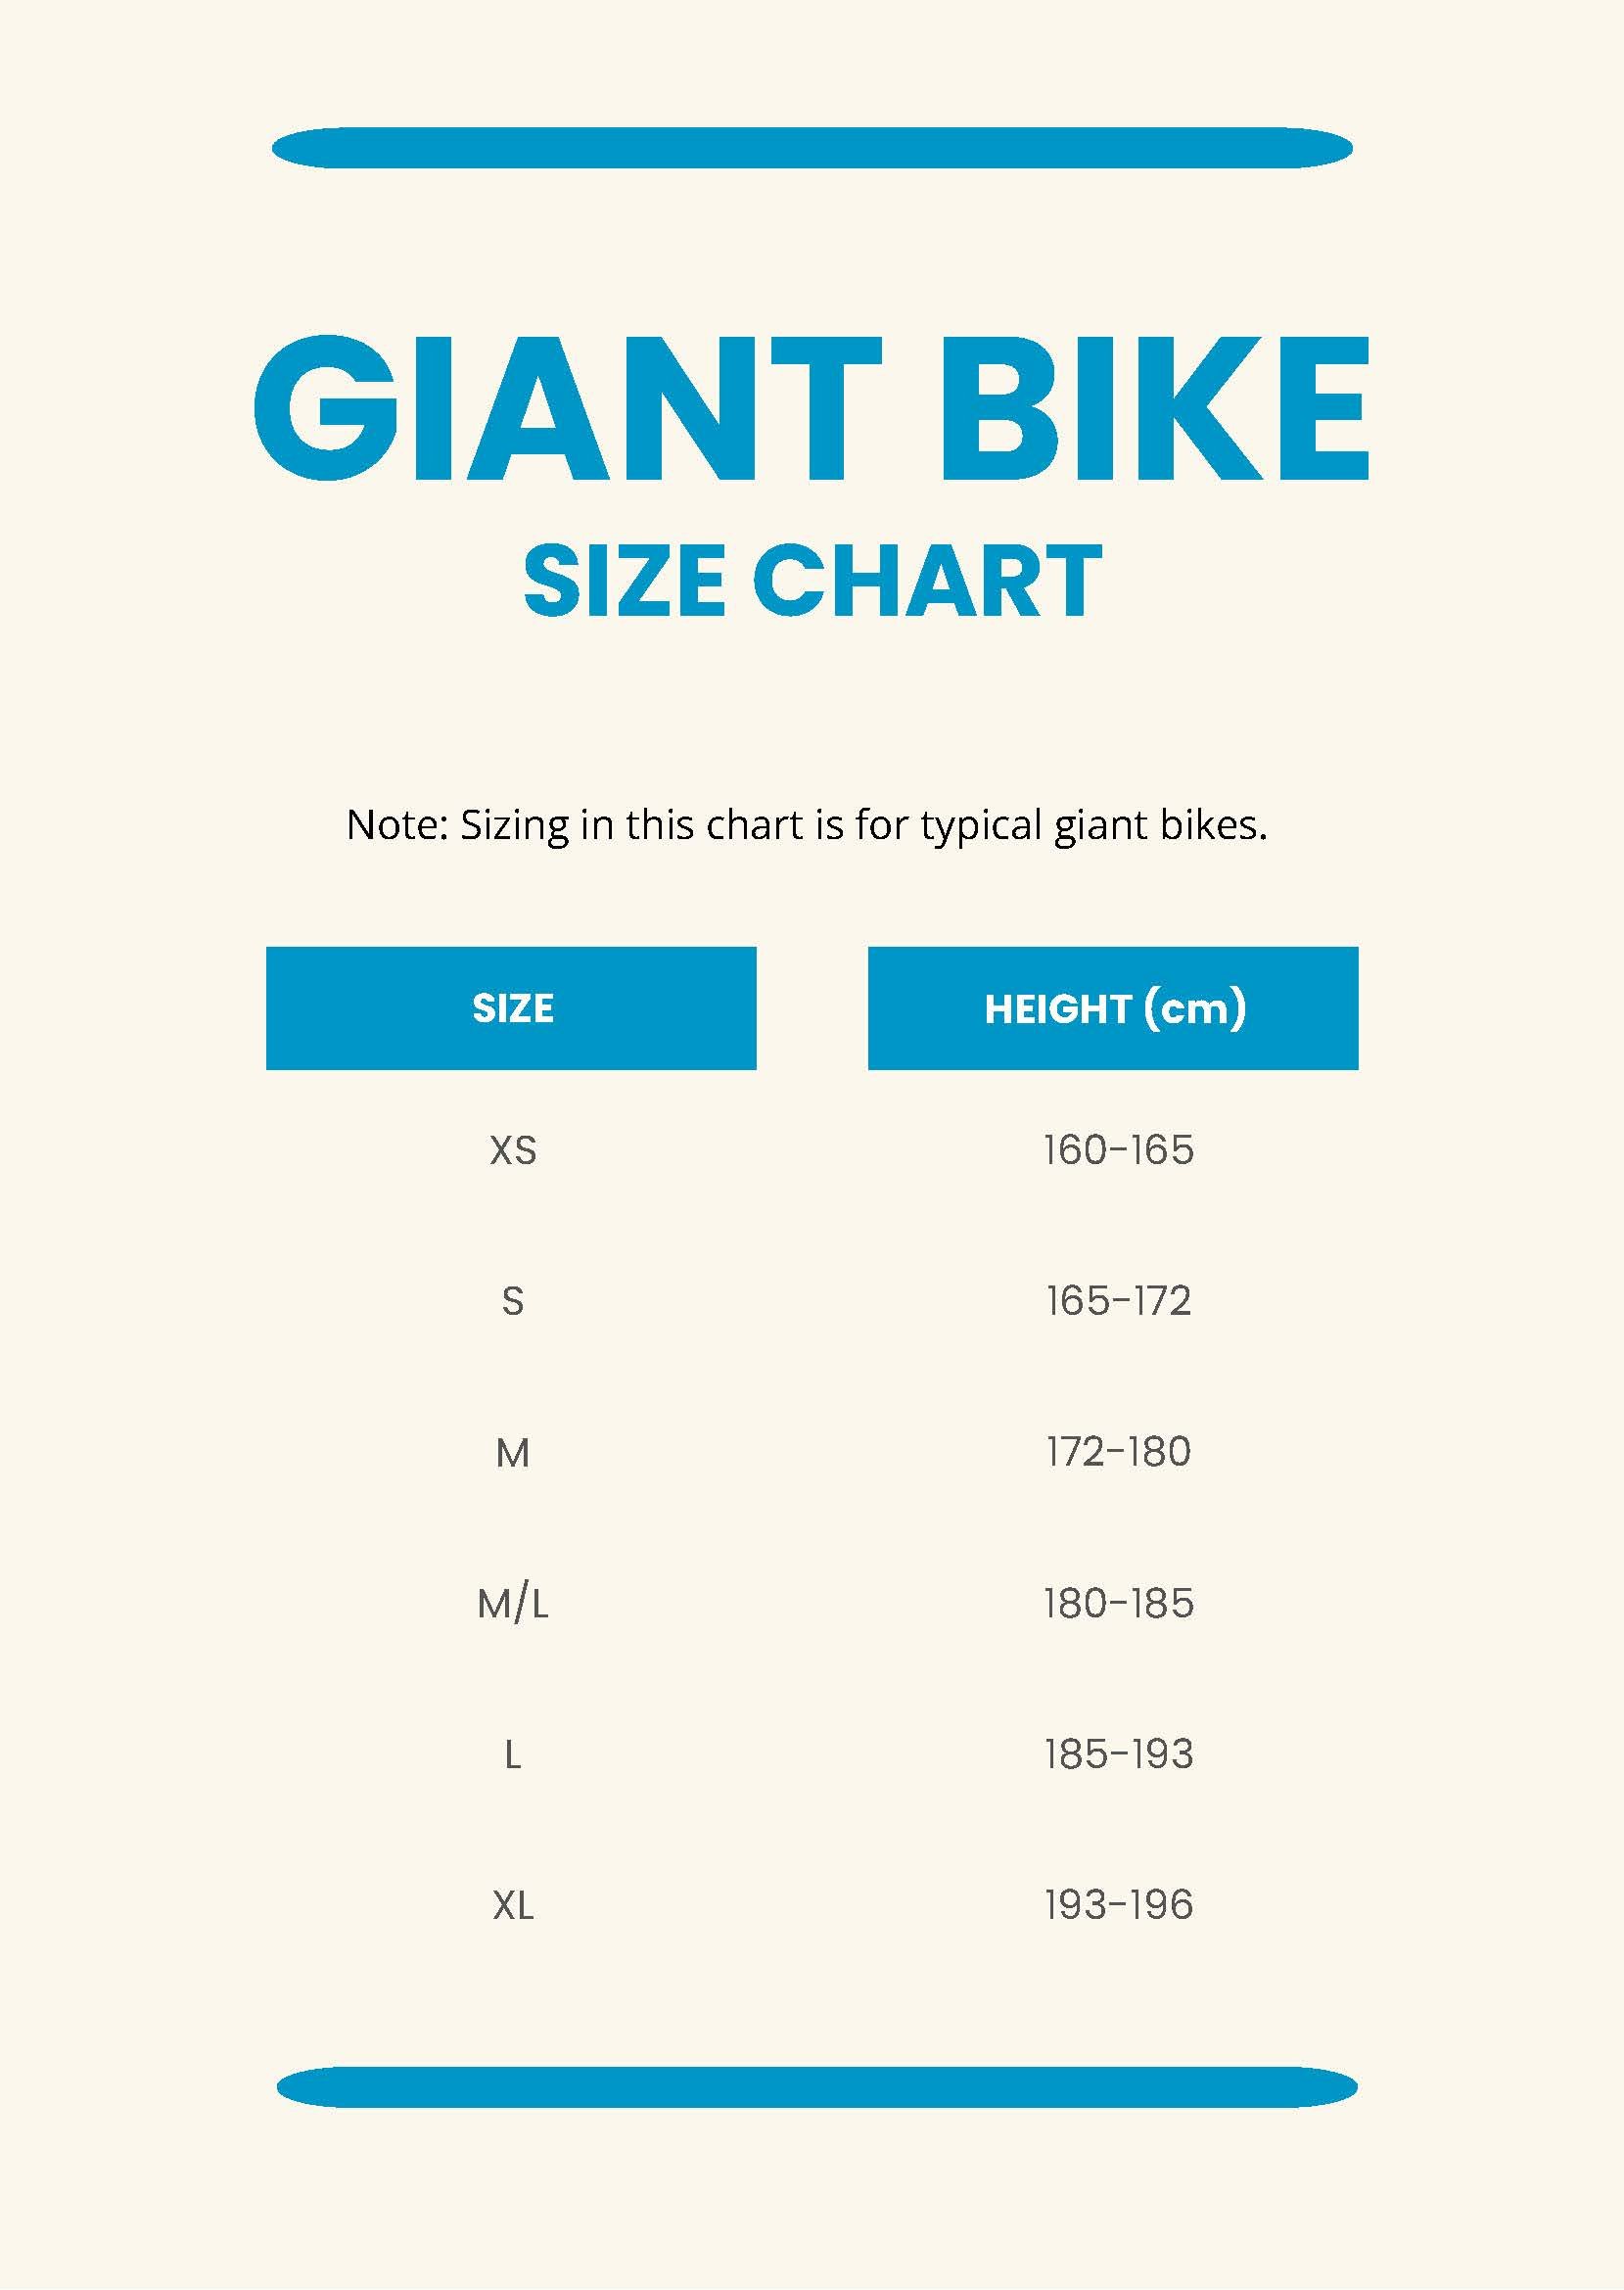 Giant Bike Size Chart in PDF